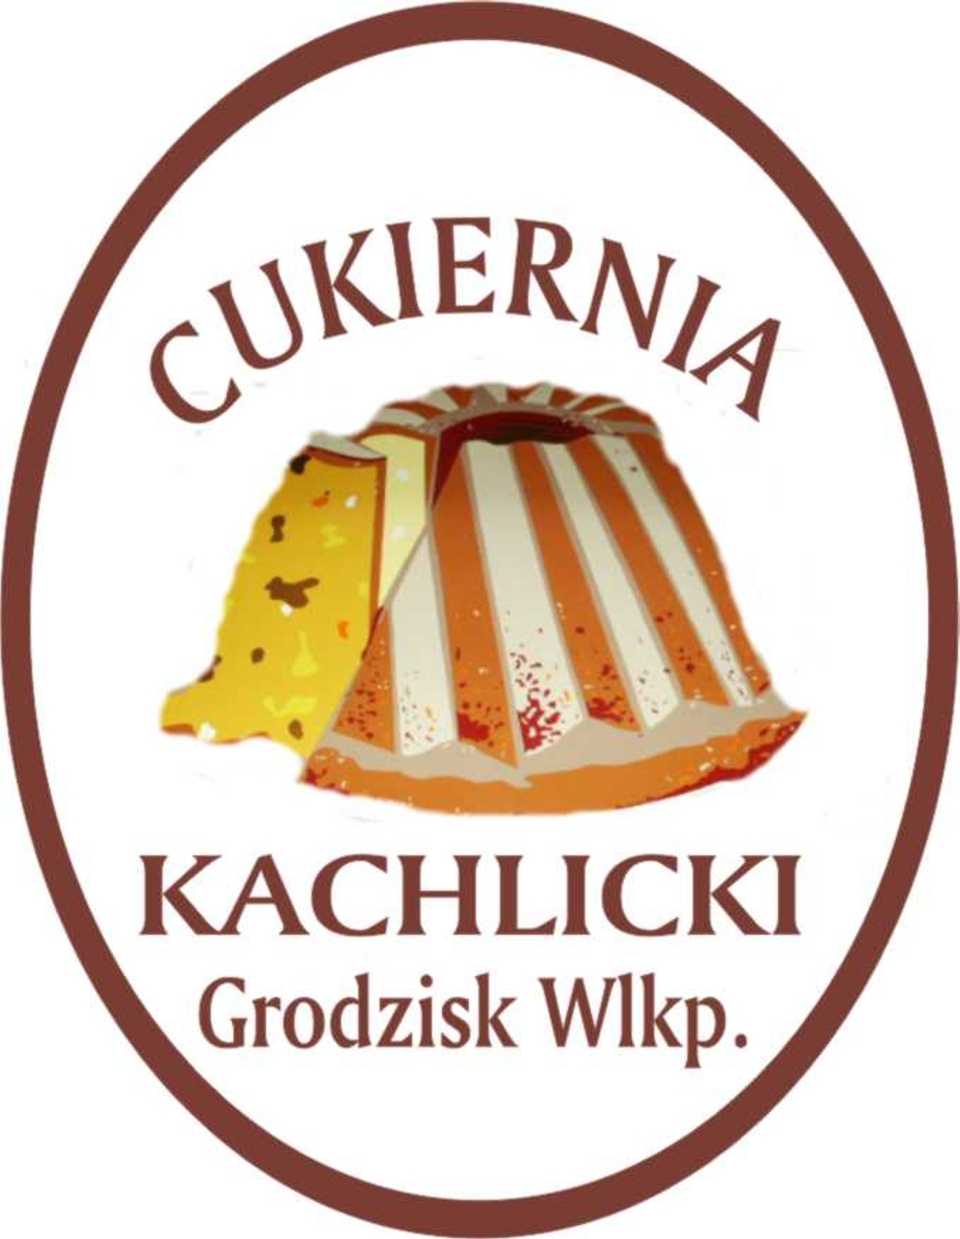 Cukiernia Jan Kachlicki